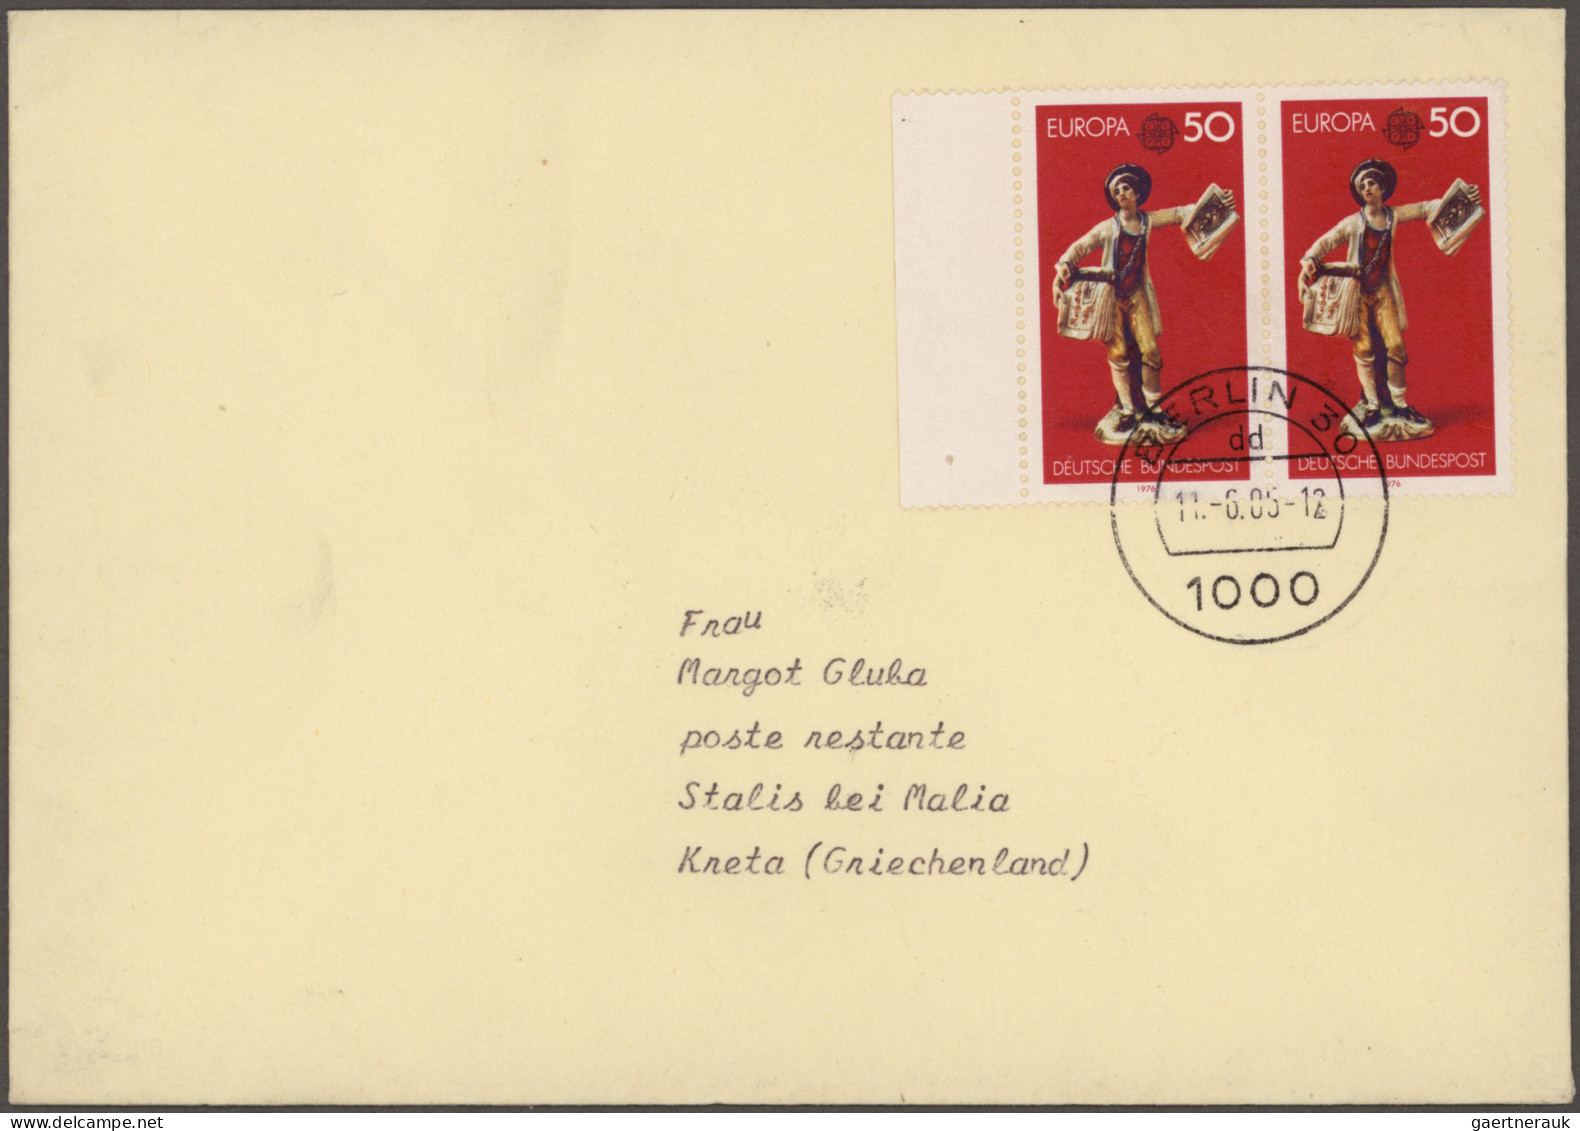 Bundesrepublik Deutschland: 1955/1997, Partie von ca. 174 Briefen und Karten mit